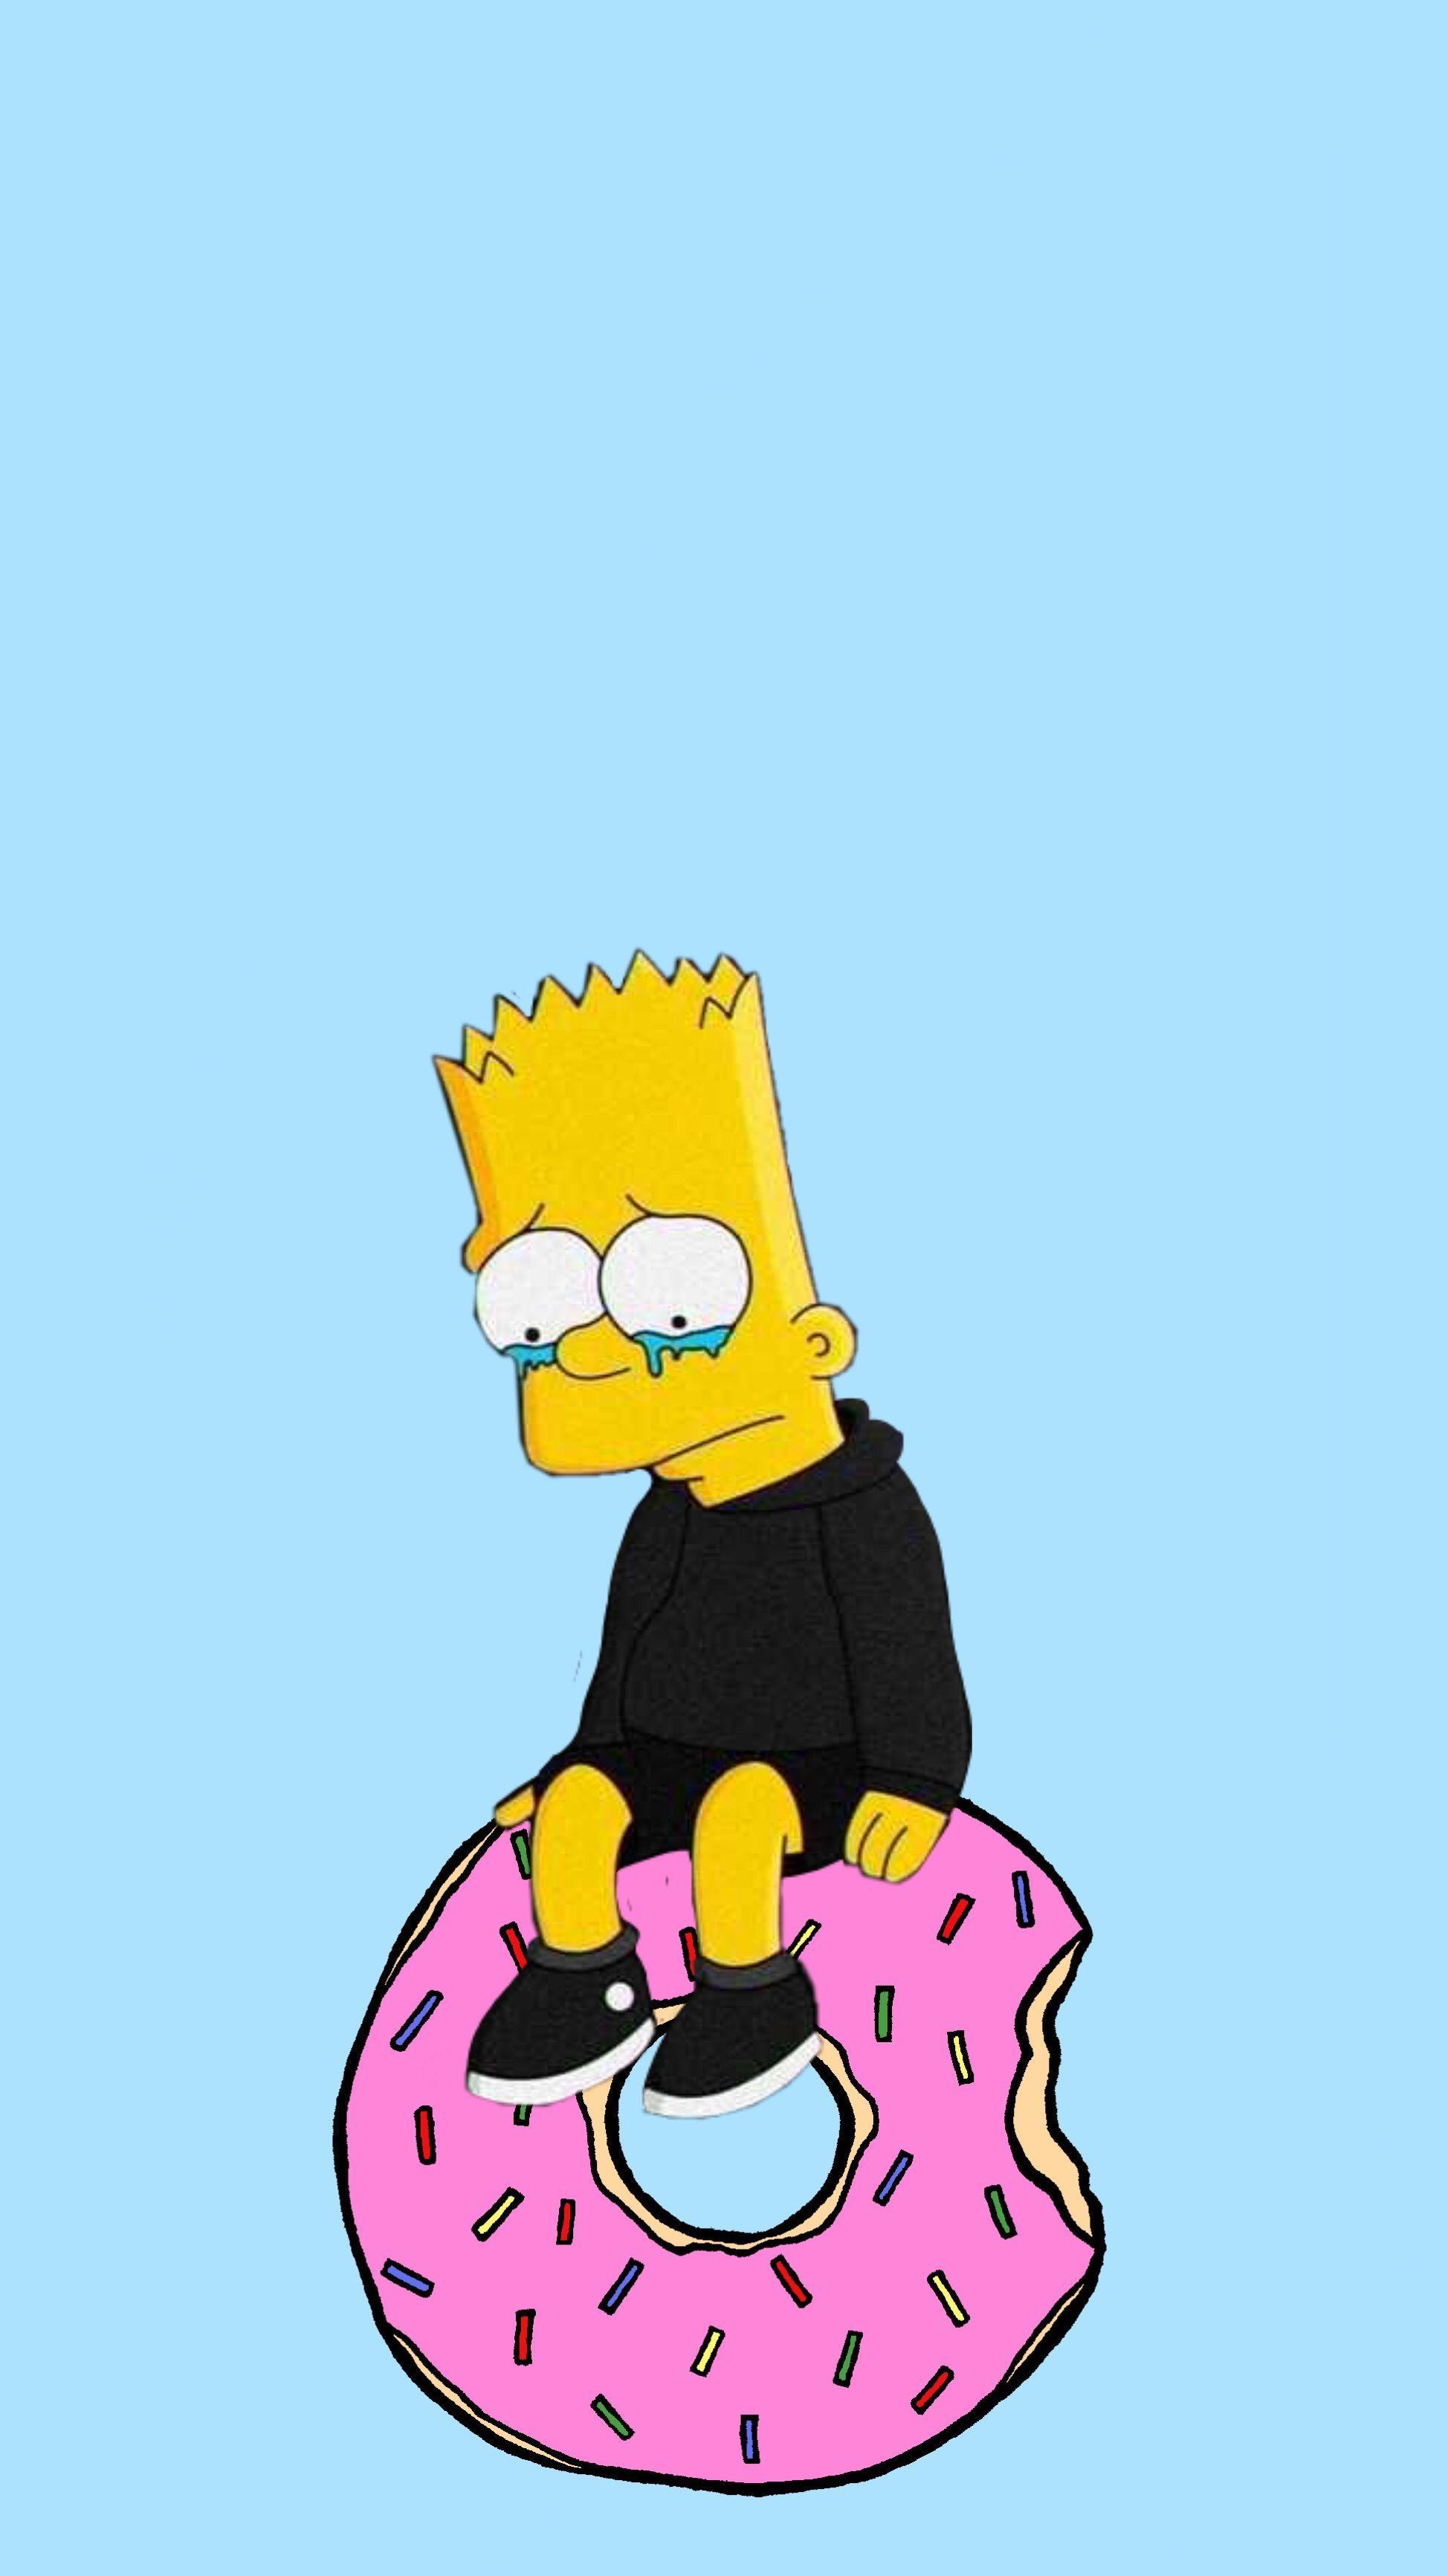 1948x3465 Hình nền thẩm mỹ Bart Simpson 1948 × 3465